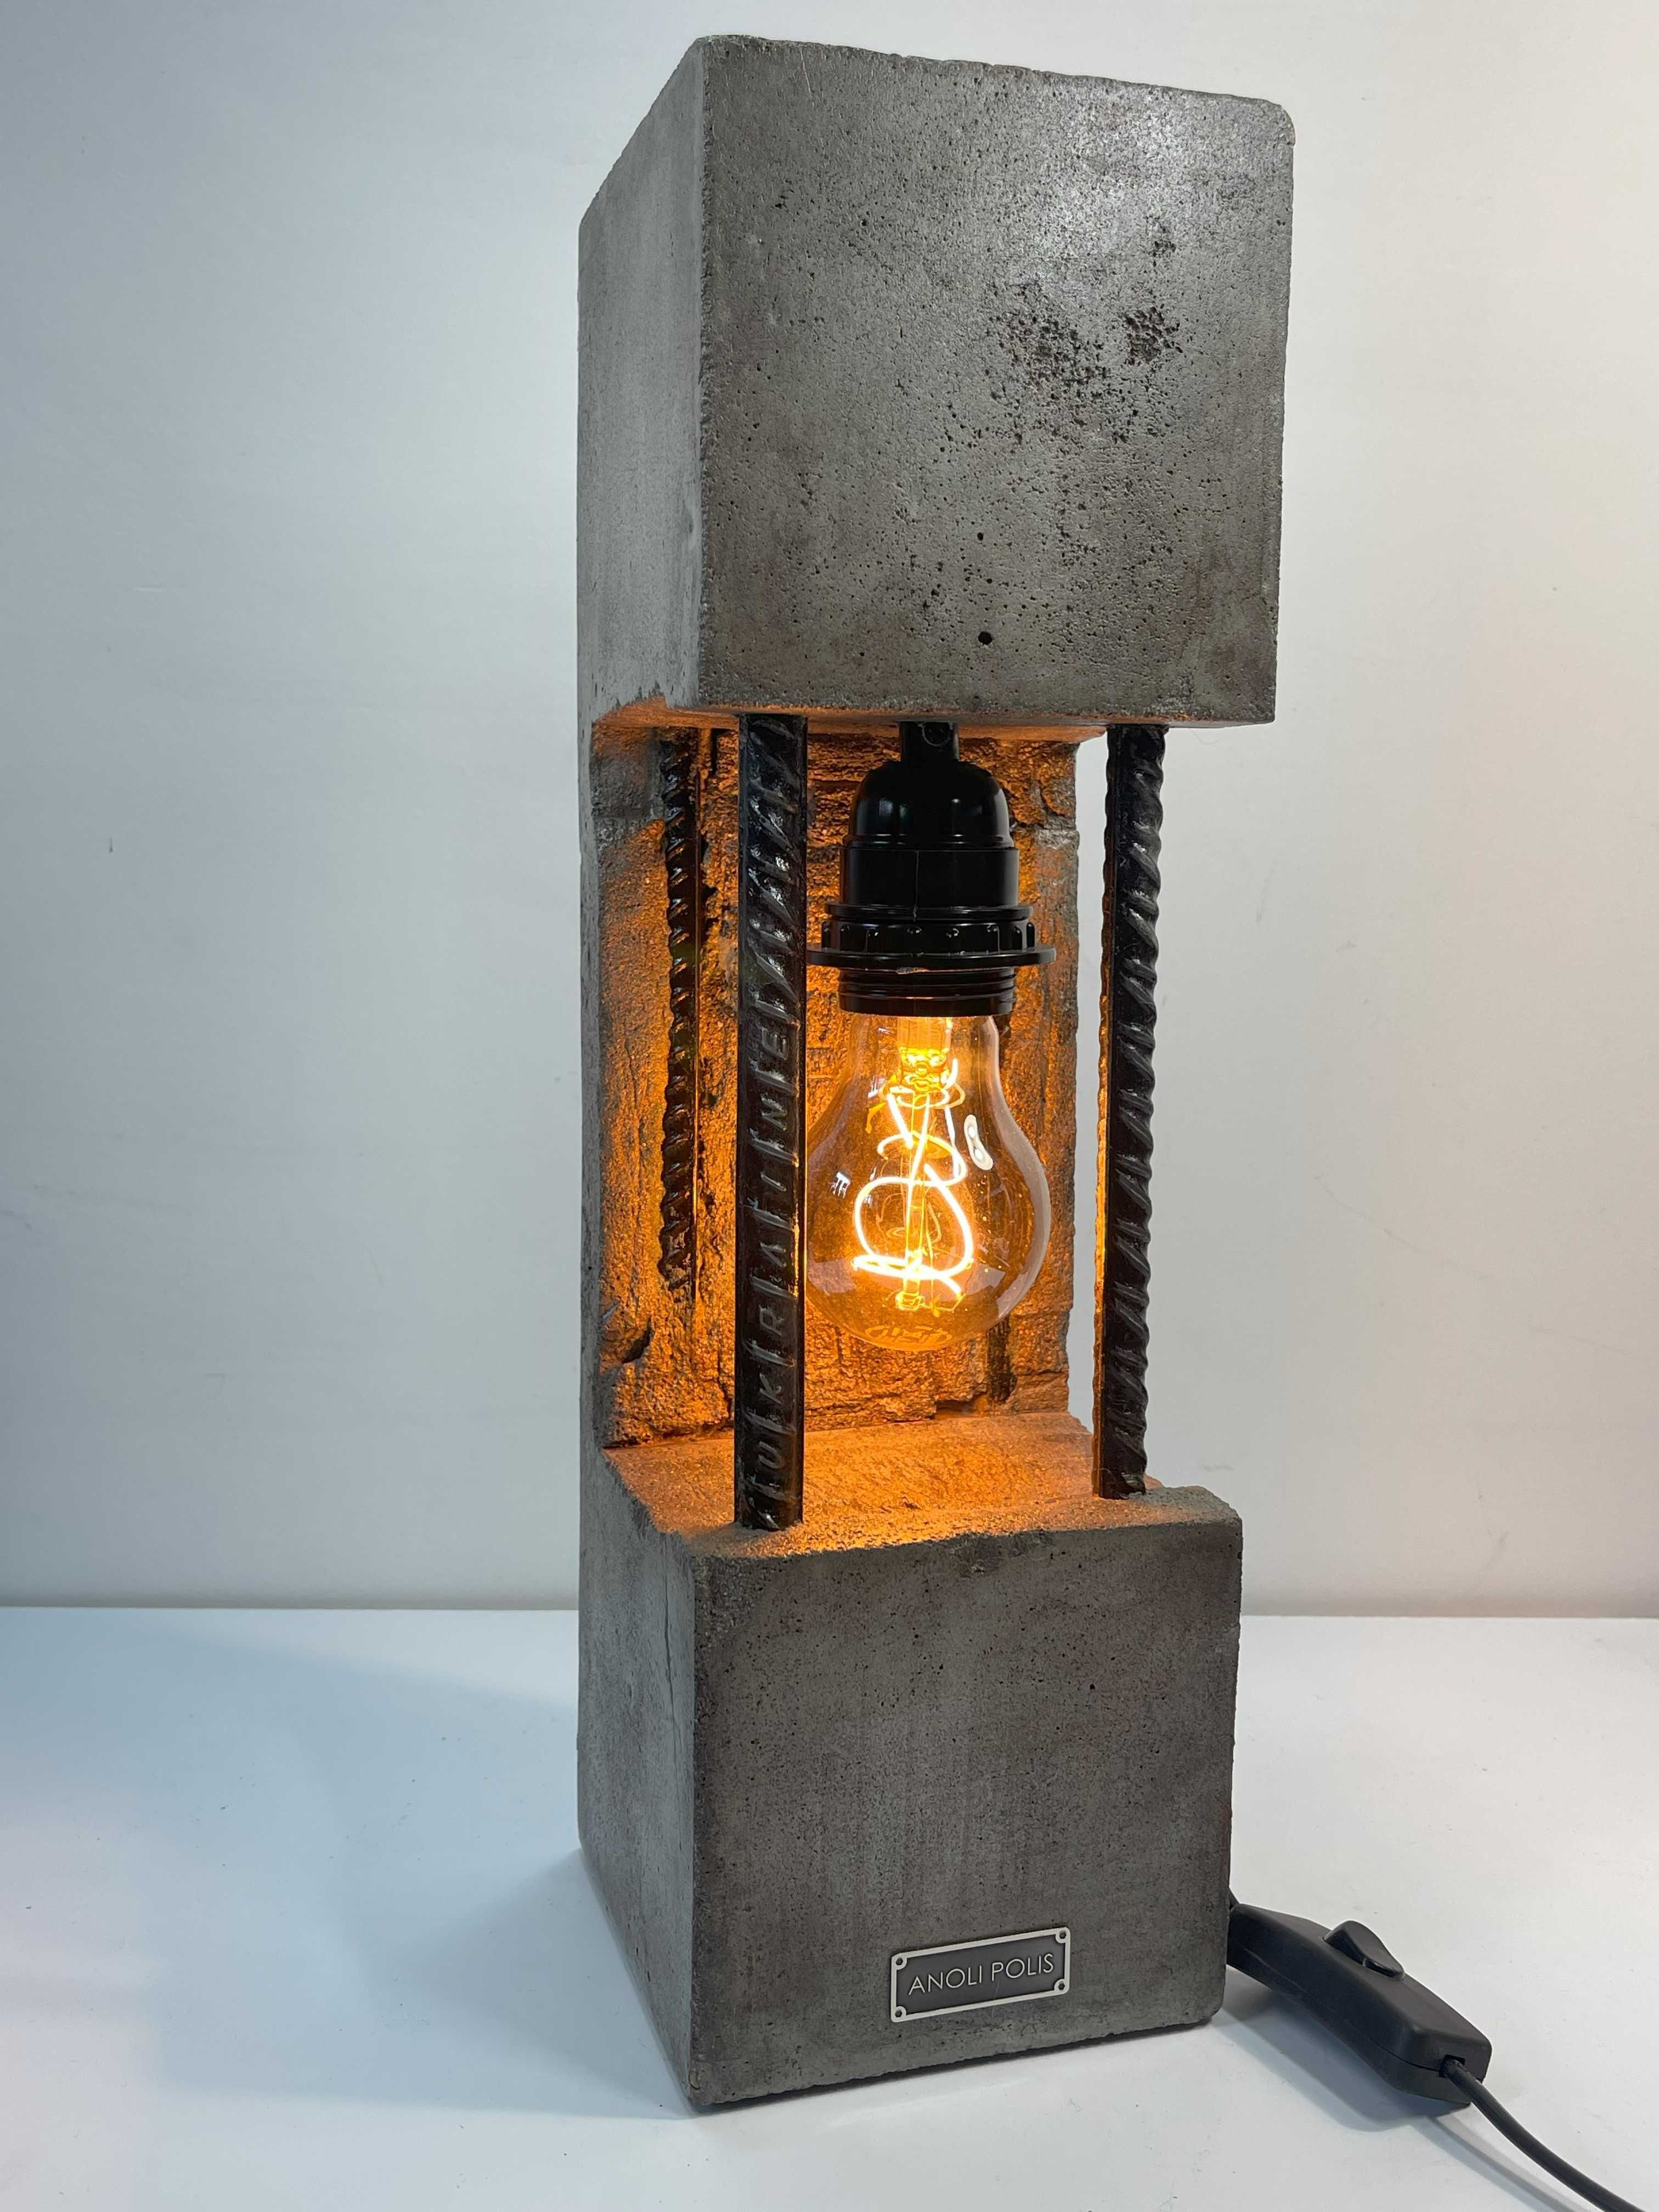 Лампа з бетону Anoli Polis 4021 коричнево-сірий